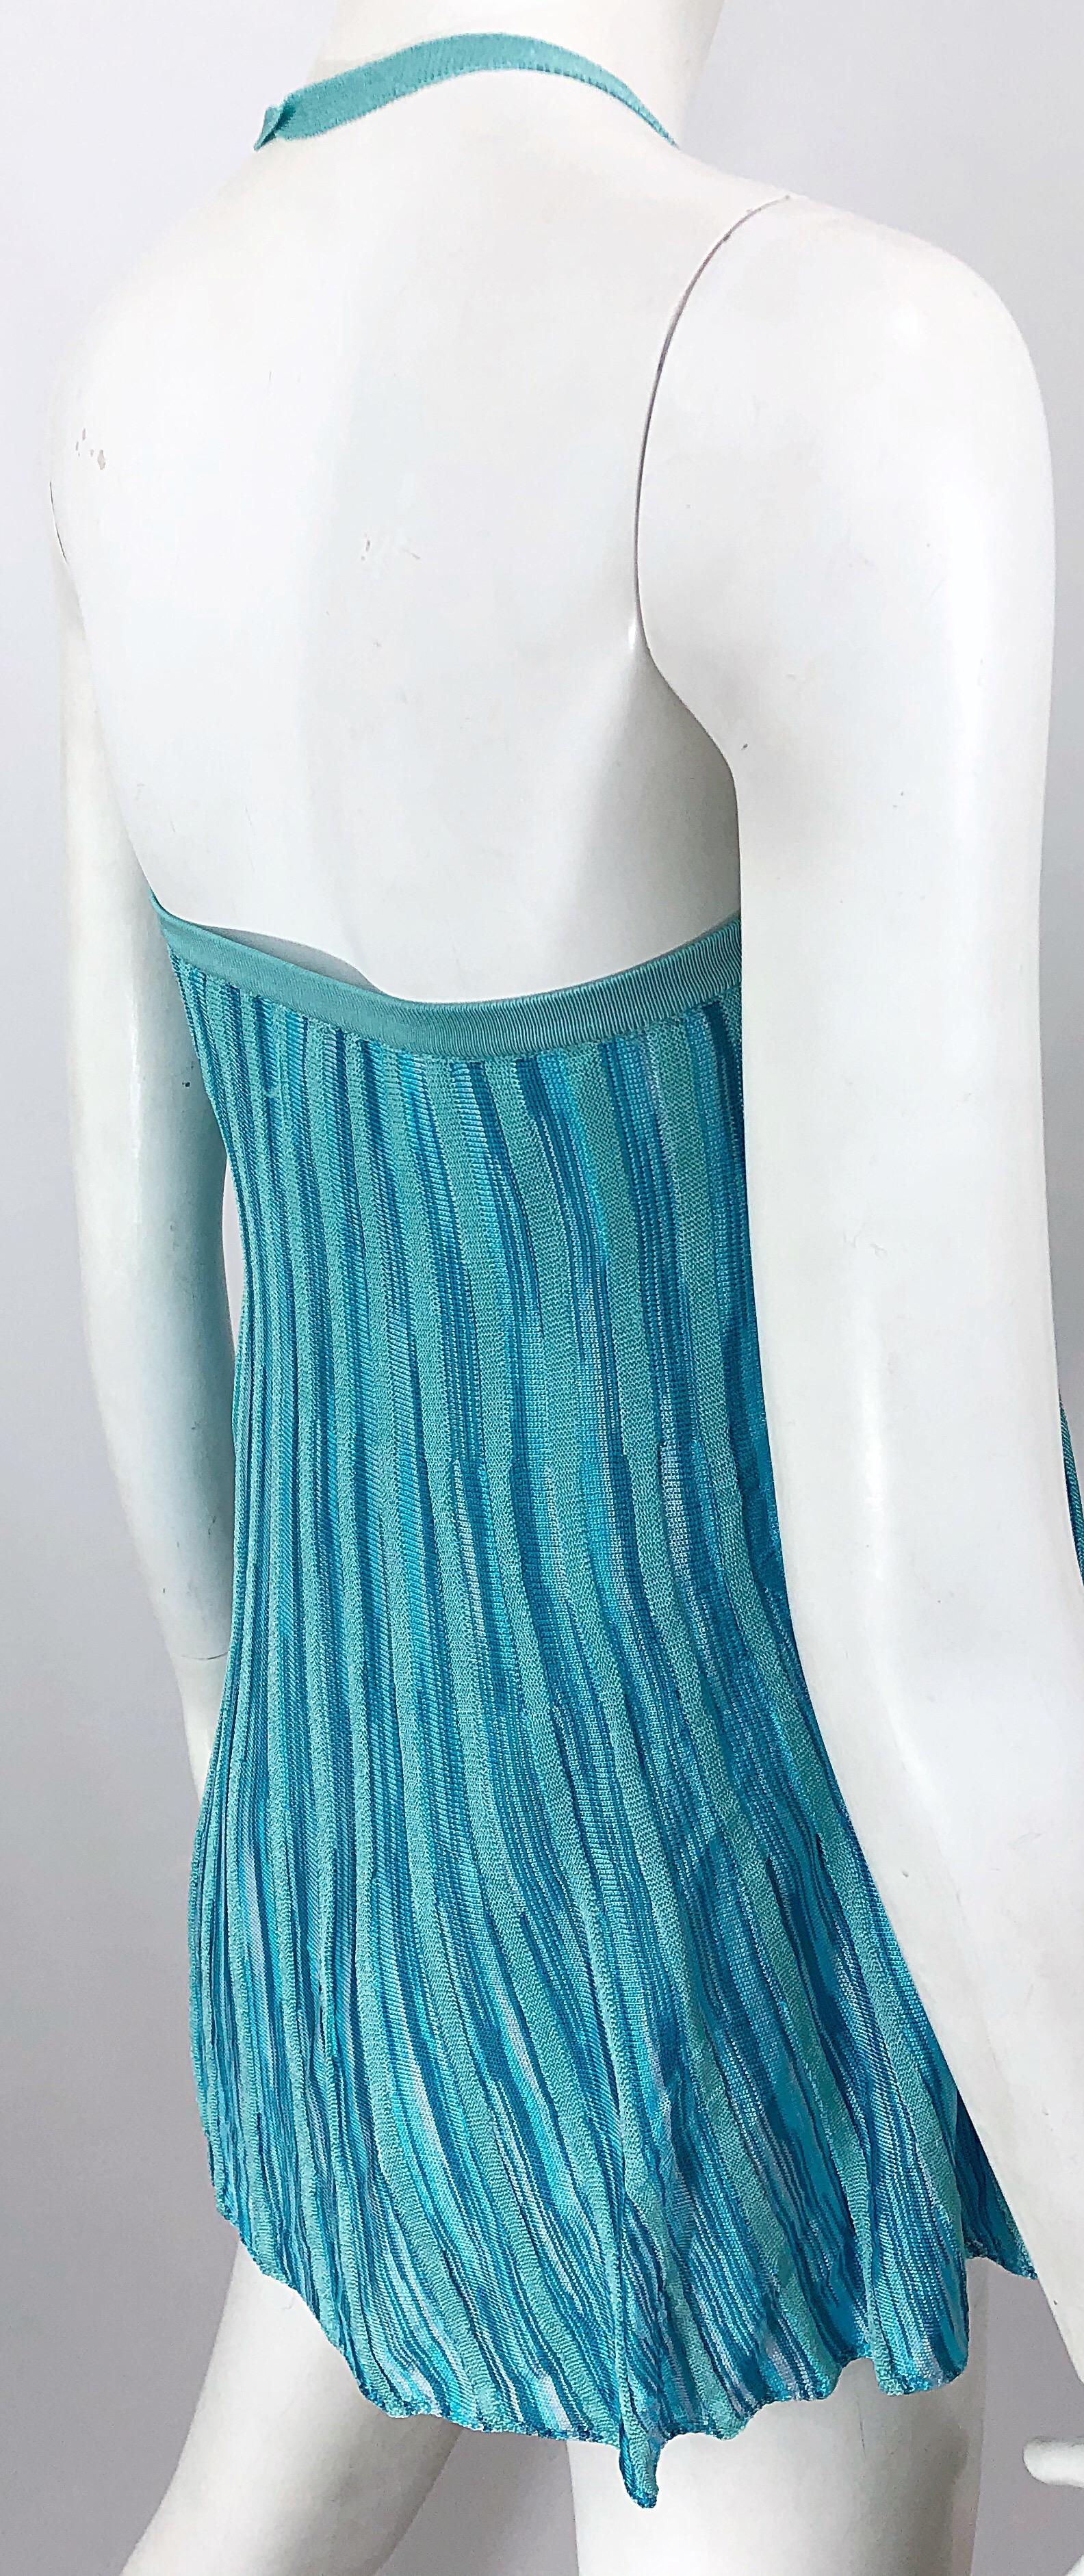 Vintage Missoni 1990s Turquoise Teal Blue Knit Vintage 90s Halter Top OR Skirt For Sale 3